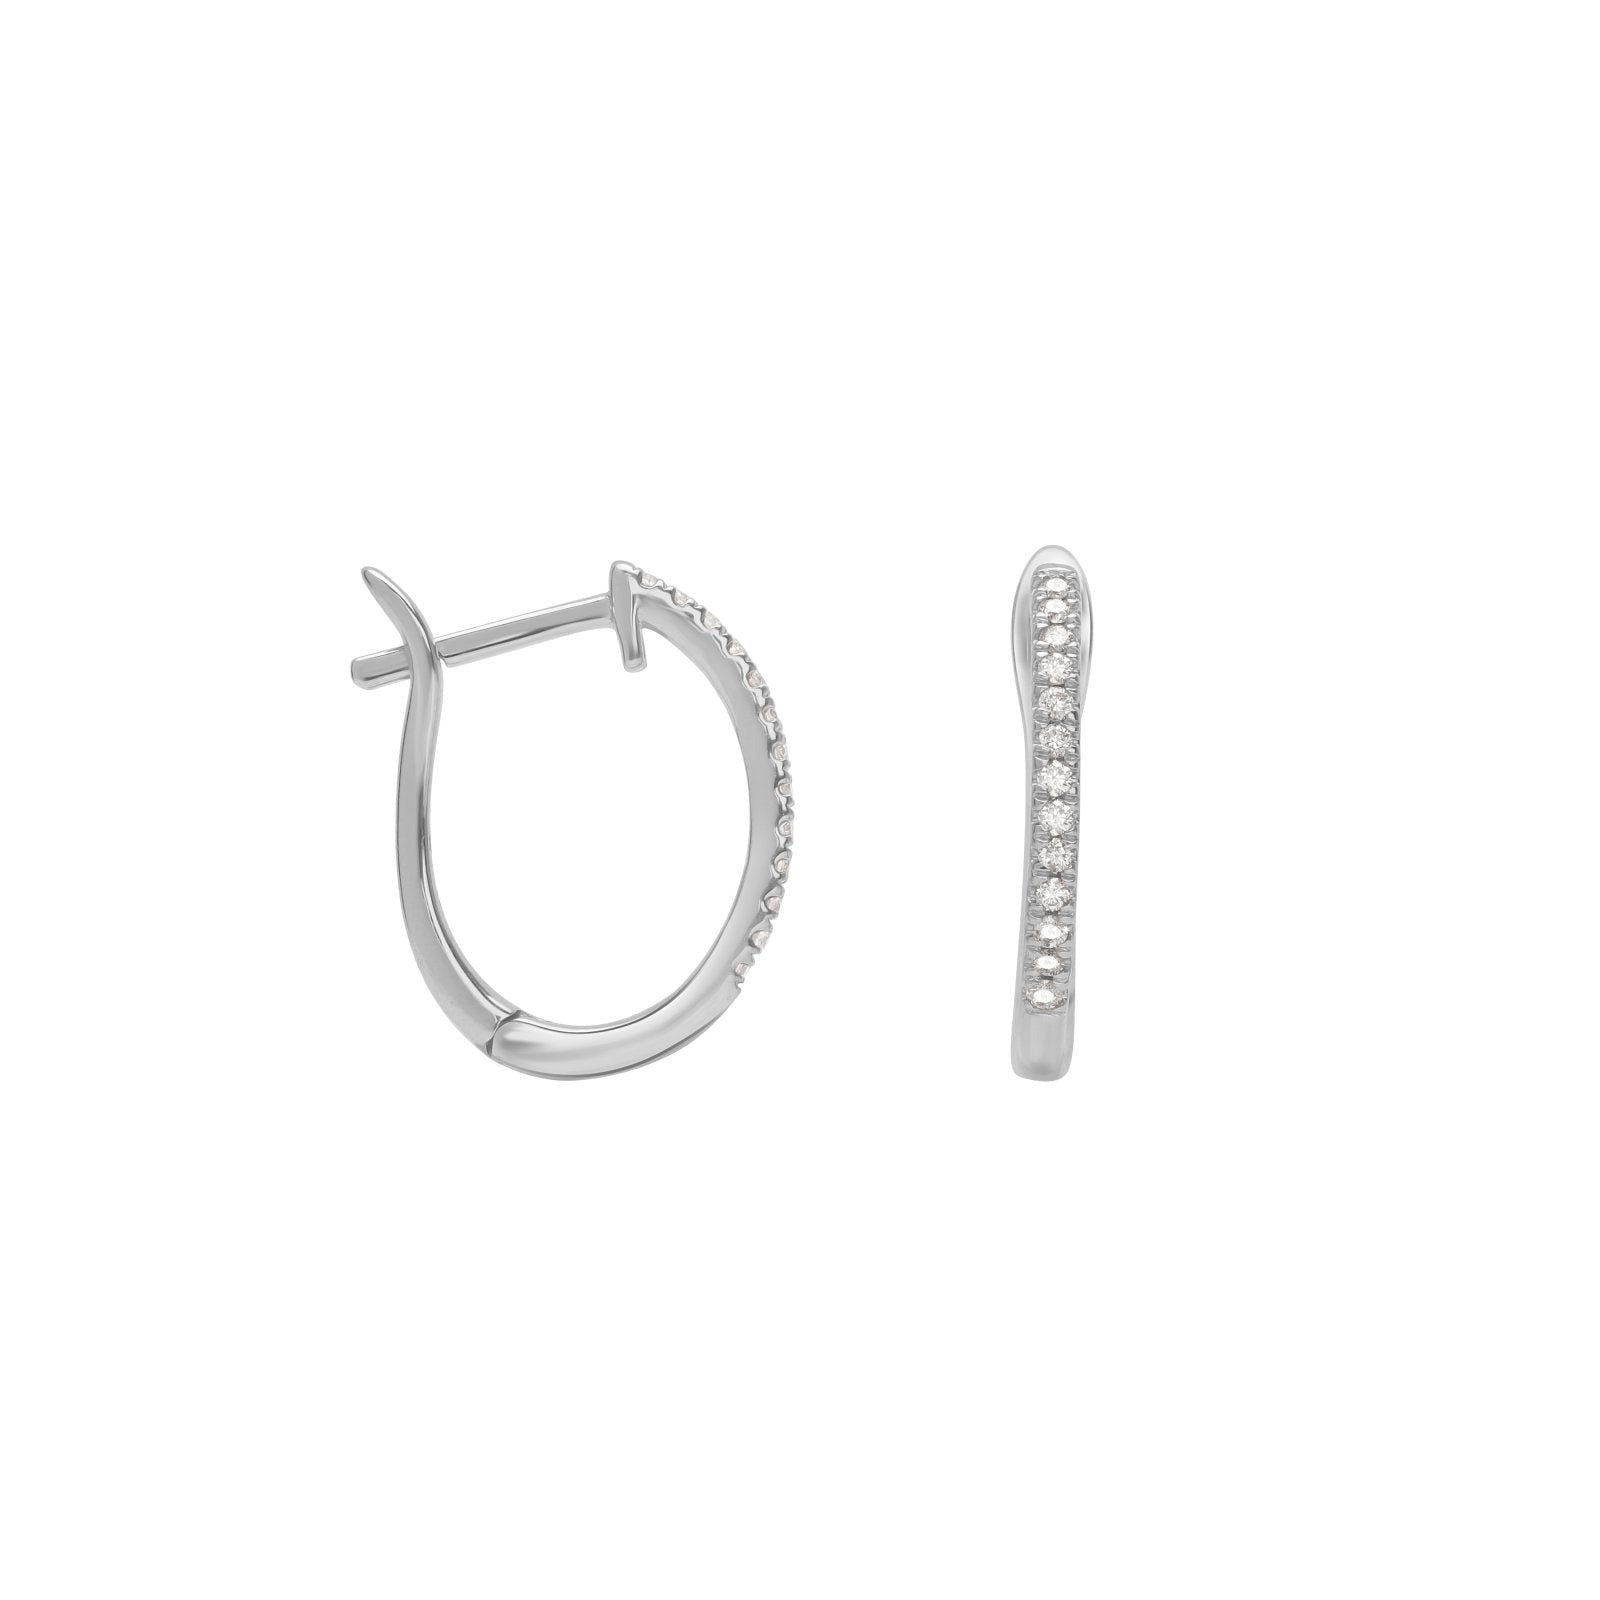 Dainty Diamond Hoop Earrings Earrings Estella Collection #product_description# 17685 14k Birthstone Birthstone Earrings #tag4# #tag5# #tag6# #tag7# #tag8# #tag9# #tag10#